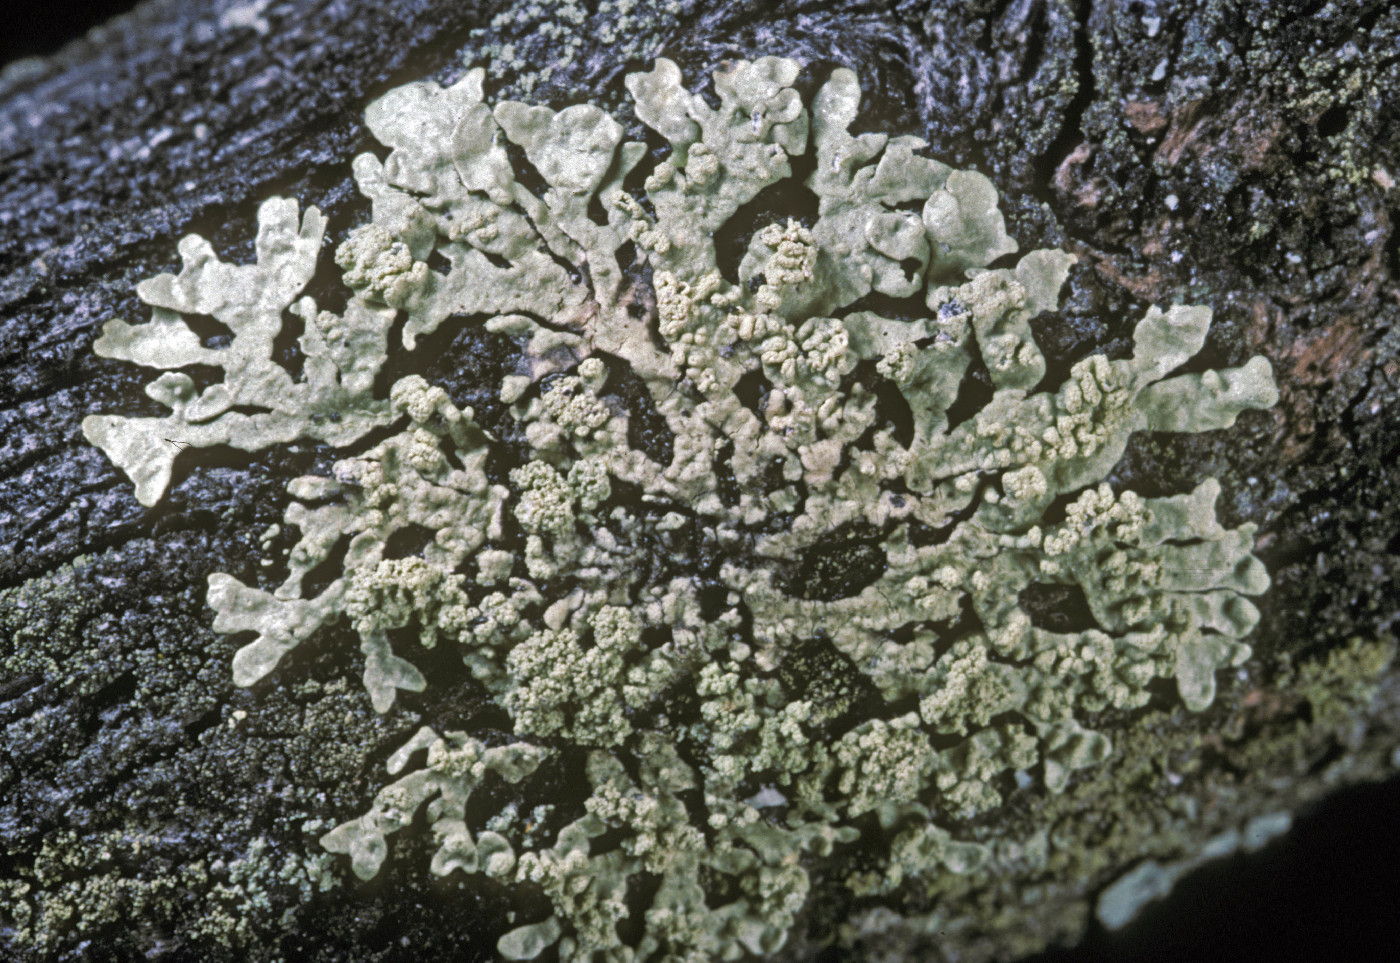 Parmeliopsis subambigua image